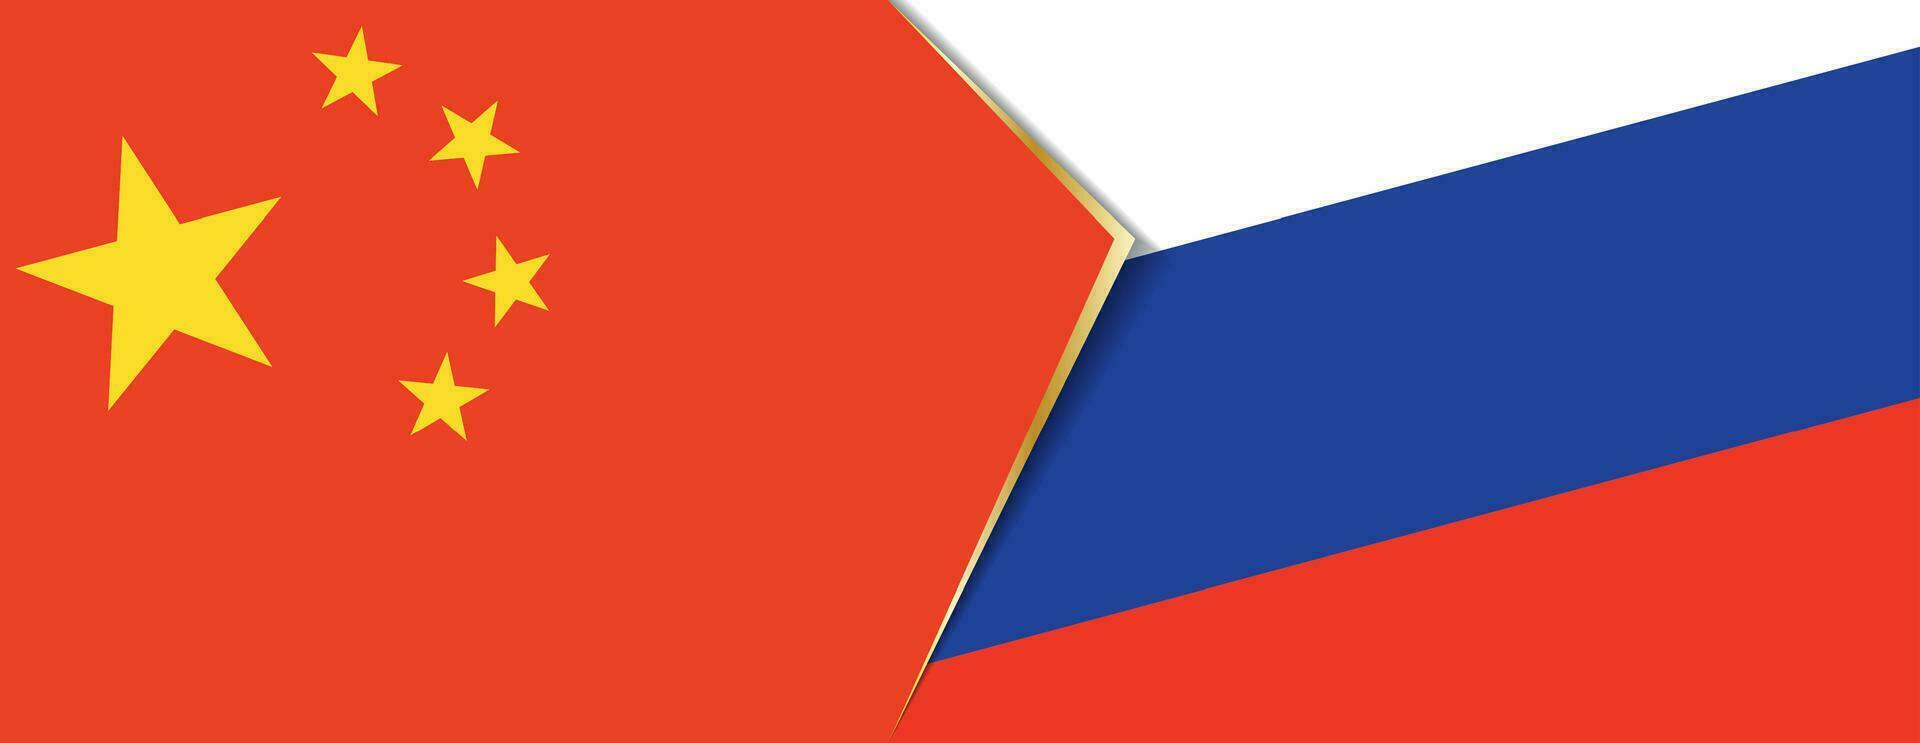 Kina och ryssland flaggor, två vektor flaggor.